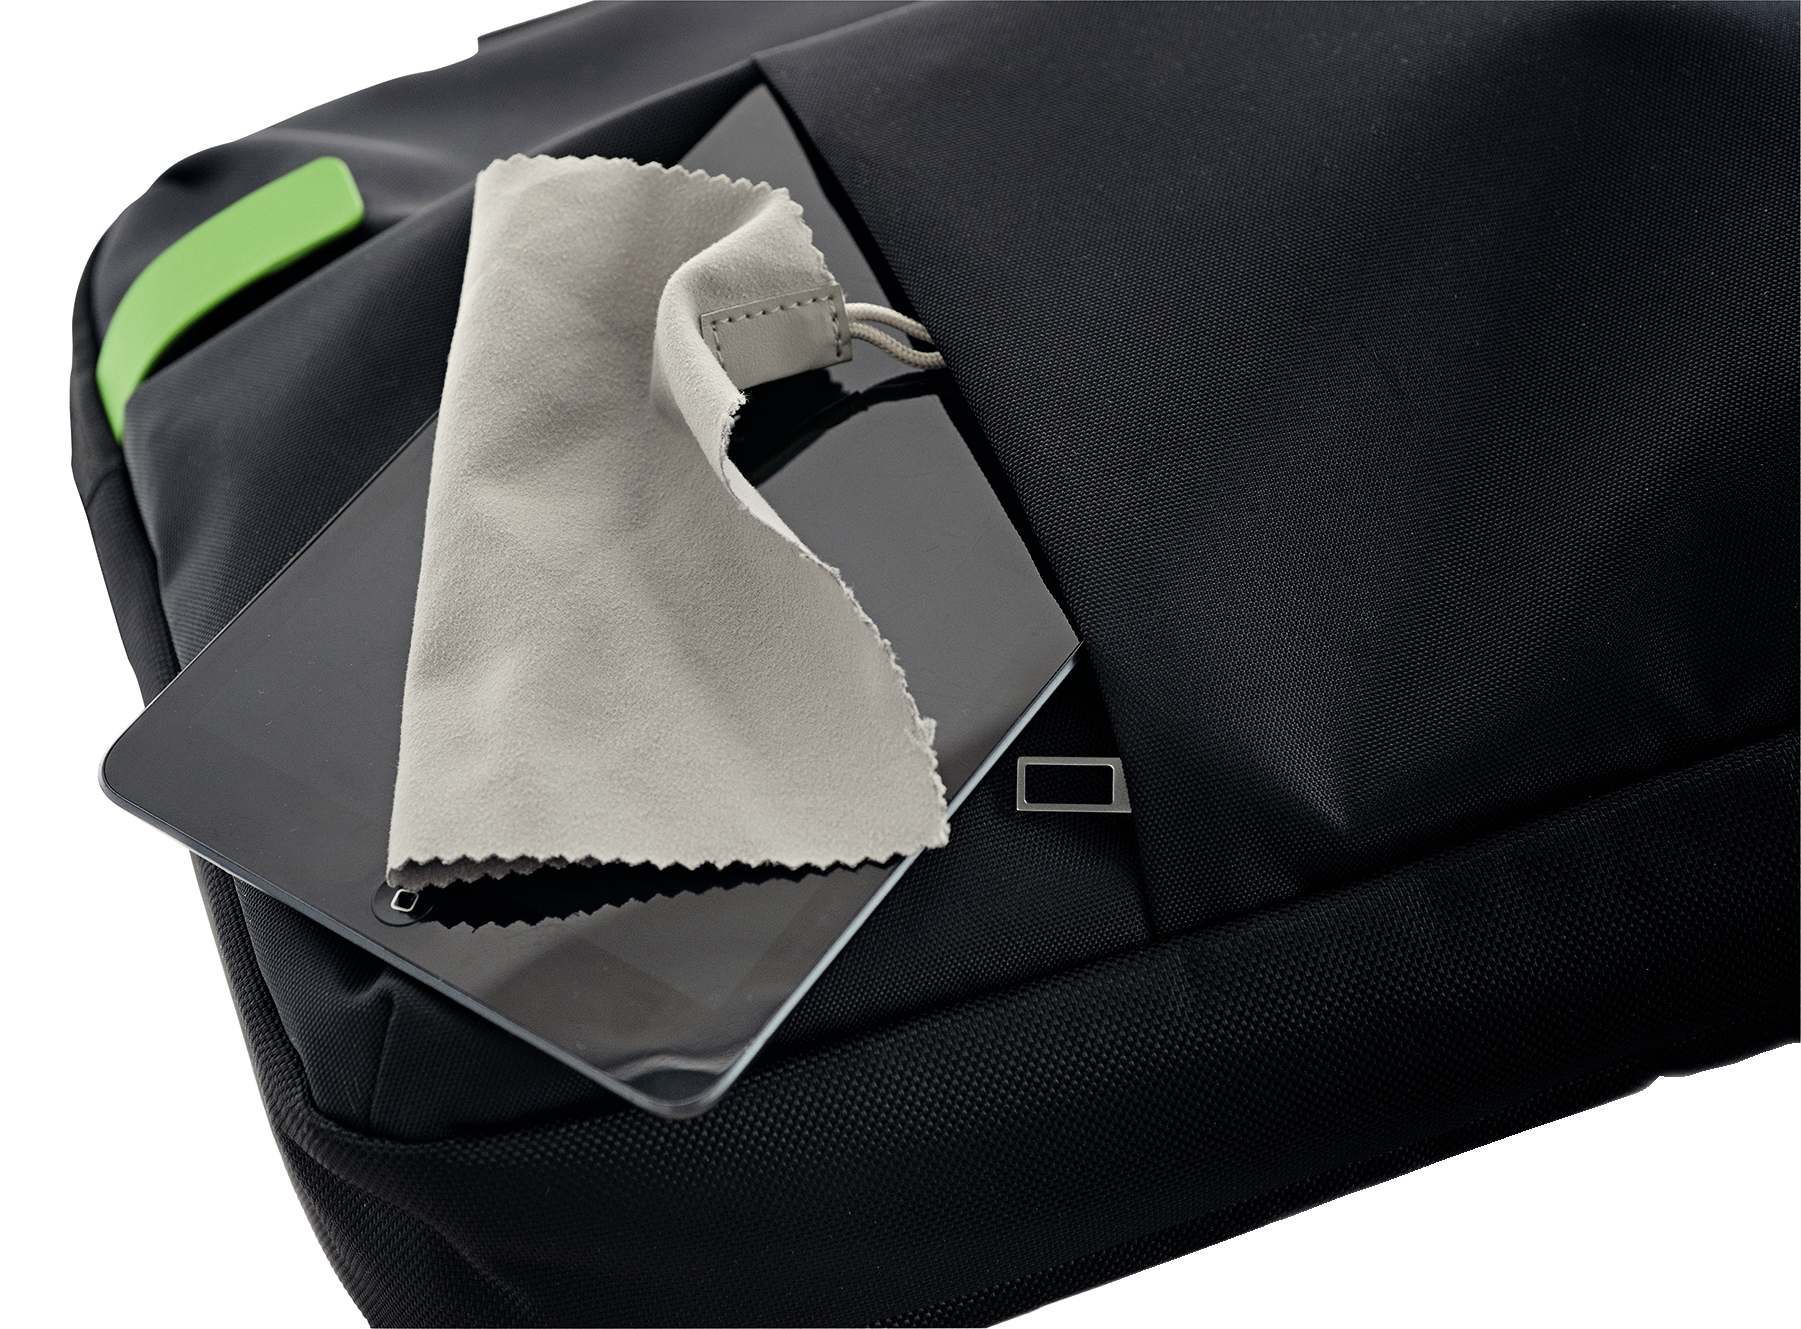 LEITZ Complete Smart Traveller Notebooktasche Universal Aktentasche schwarz für Polyester